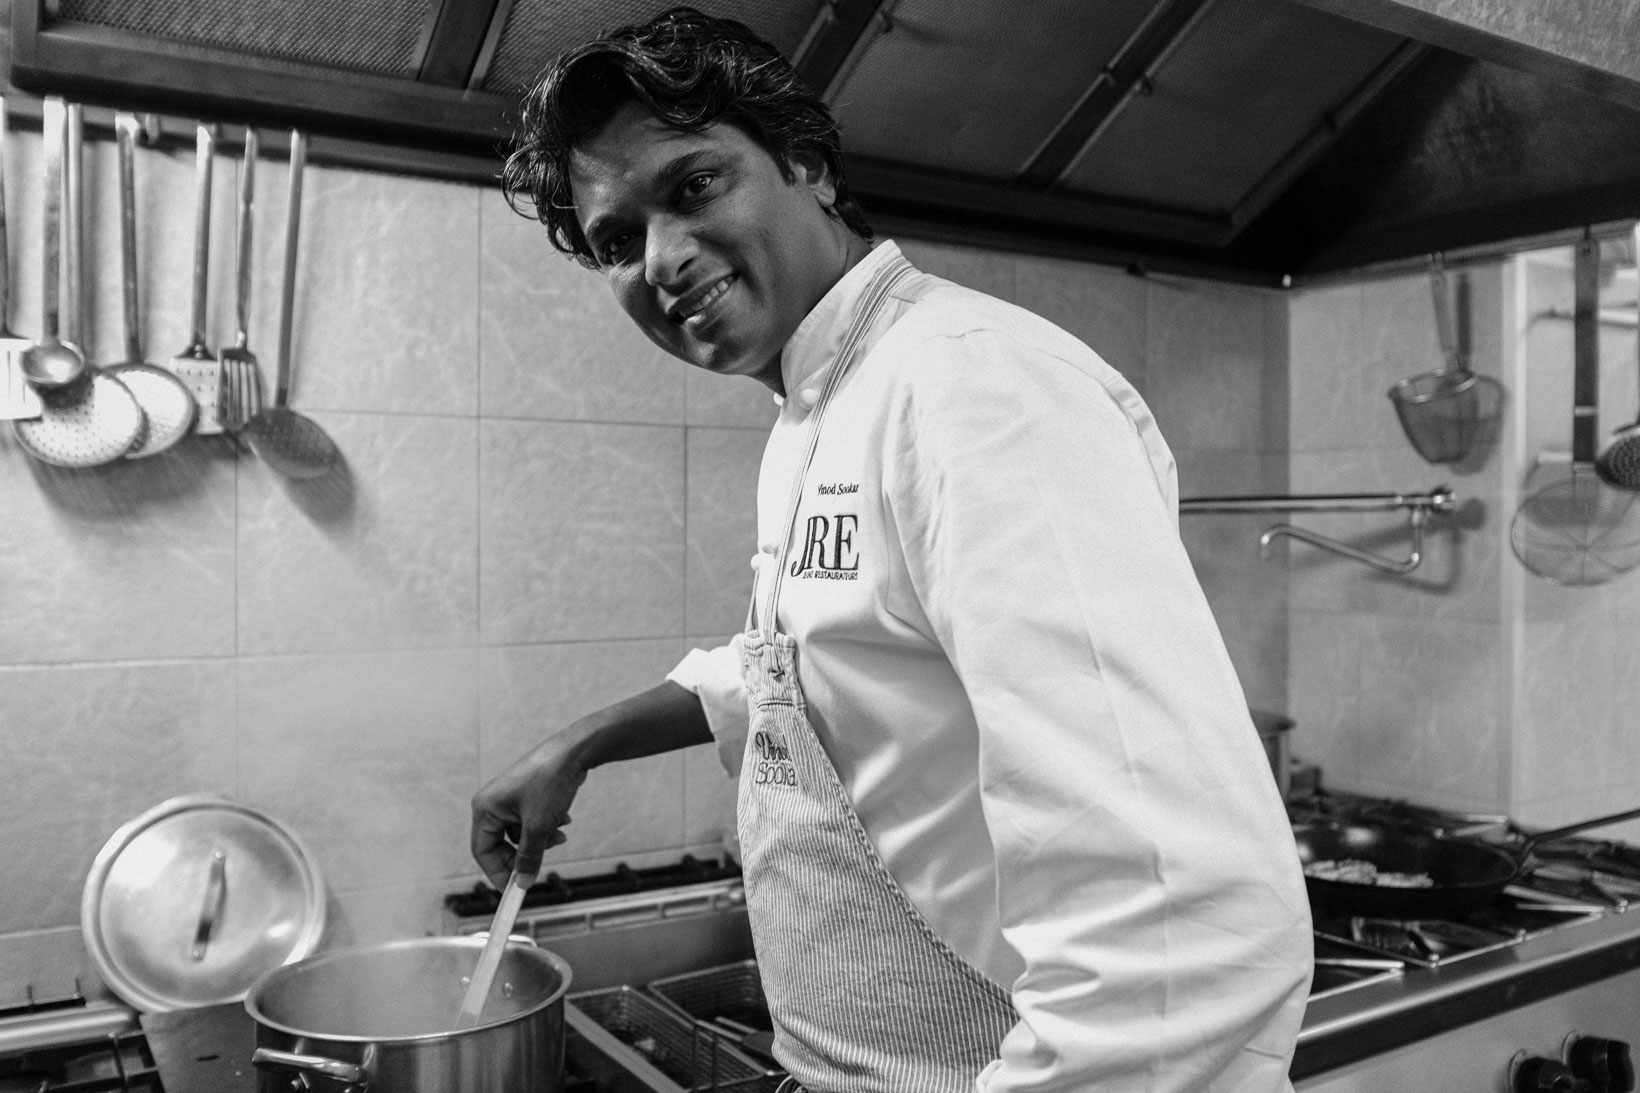 Rui-Lorenzo-Fotografo-food-chef-vinod-sookar-ristorante-al-fornello-da-ricci-ceglie-messapica-brindisi-jre-_X1F4067_web